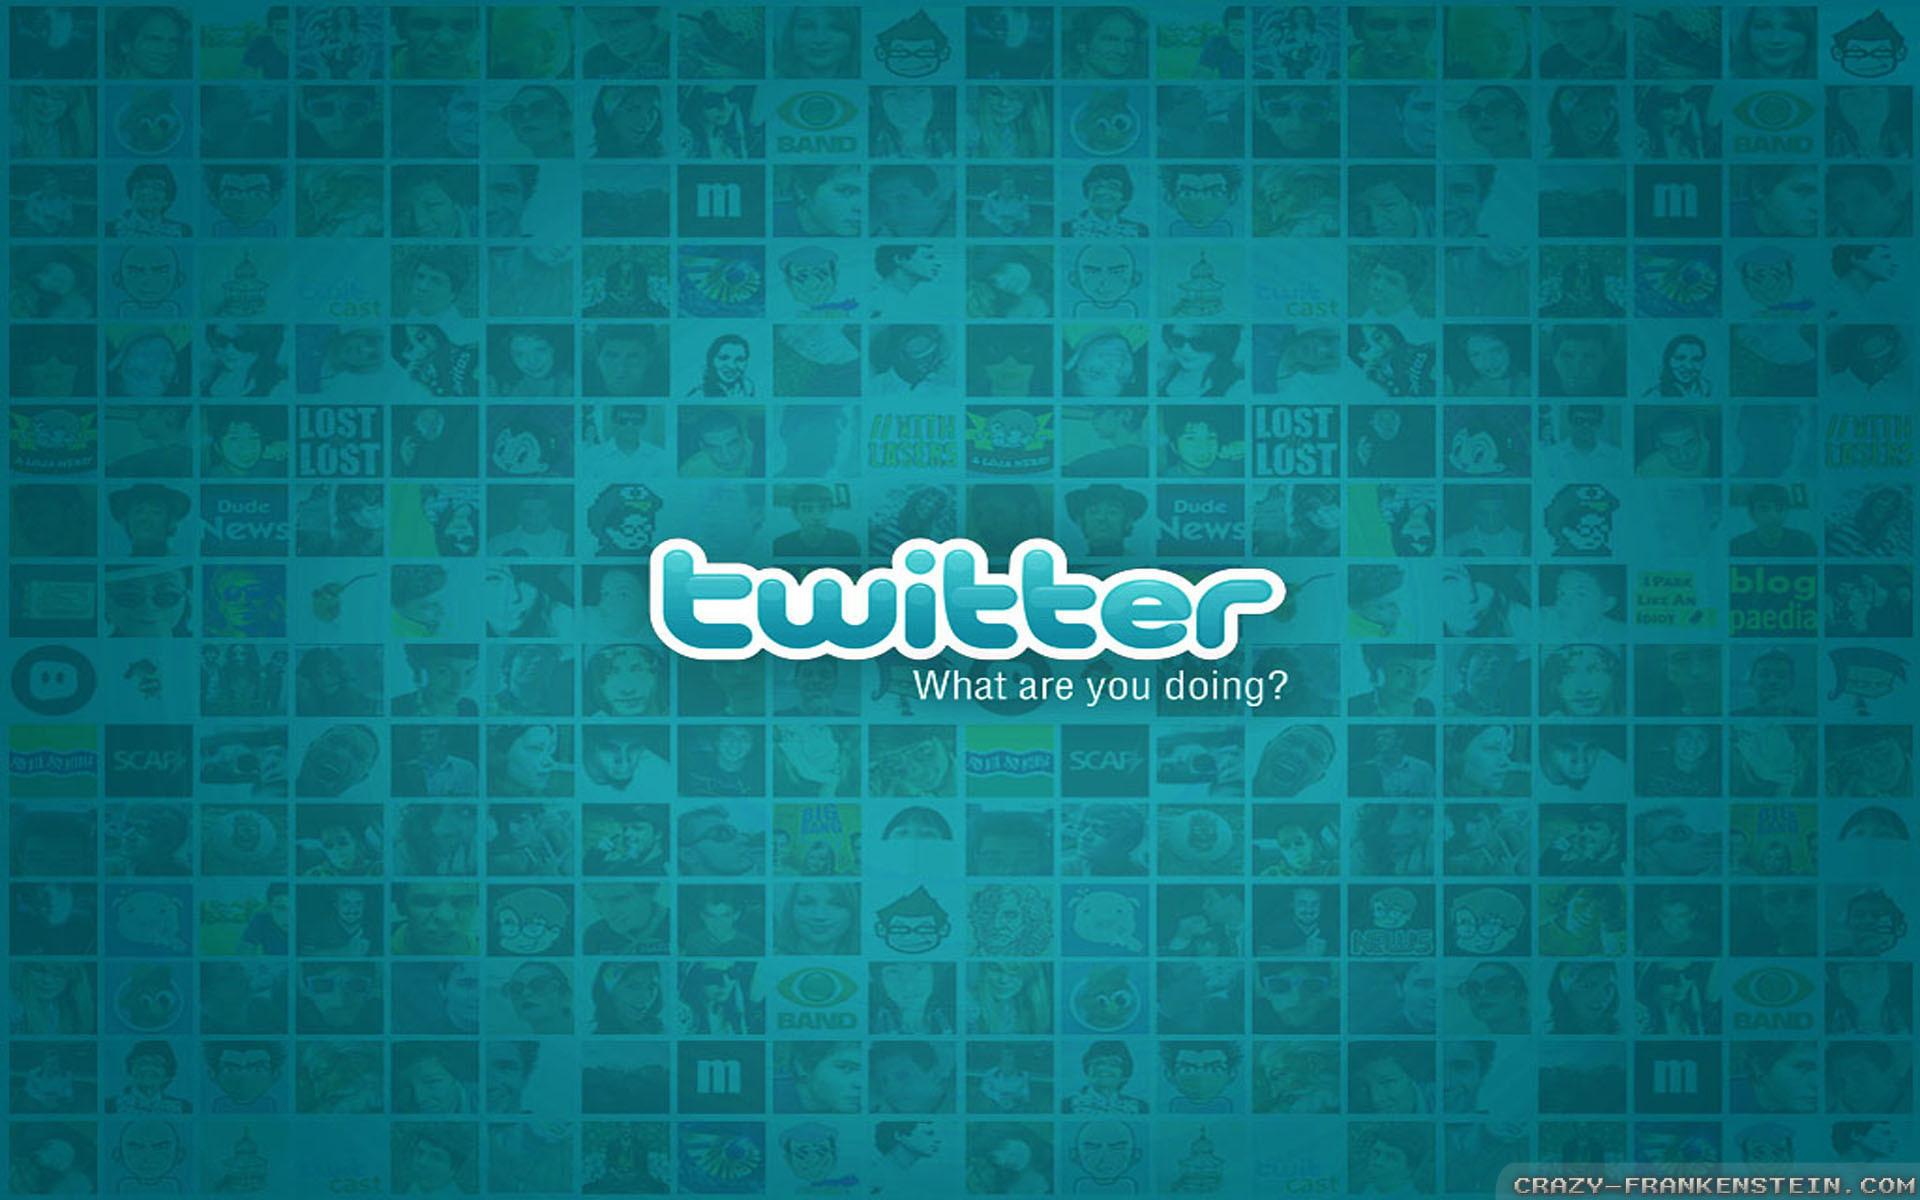 A Twitter Wallpaper